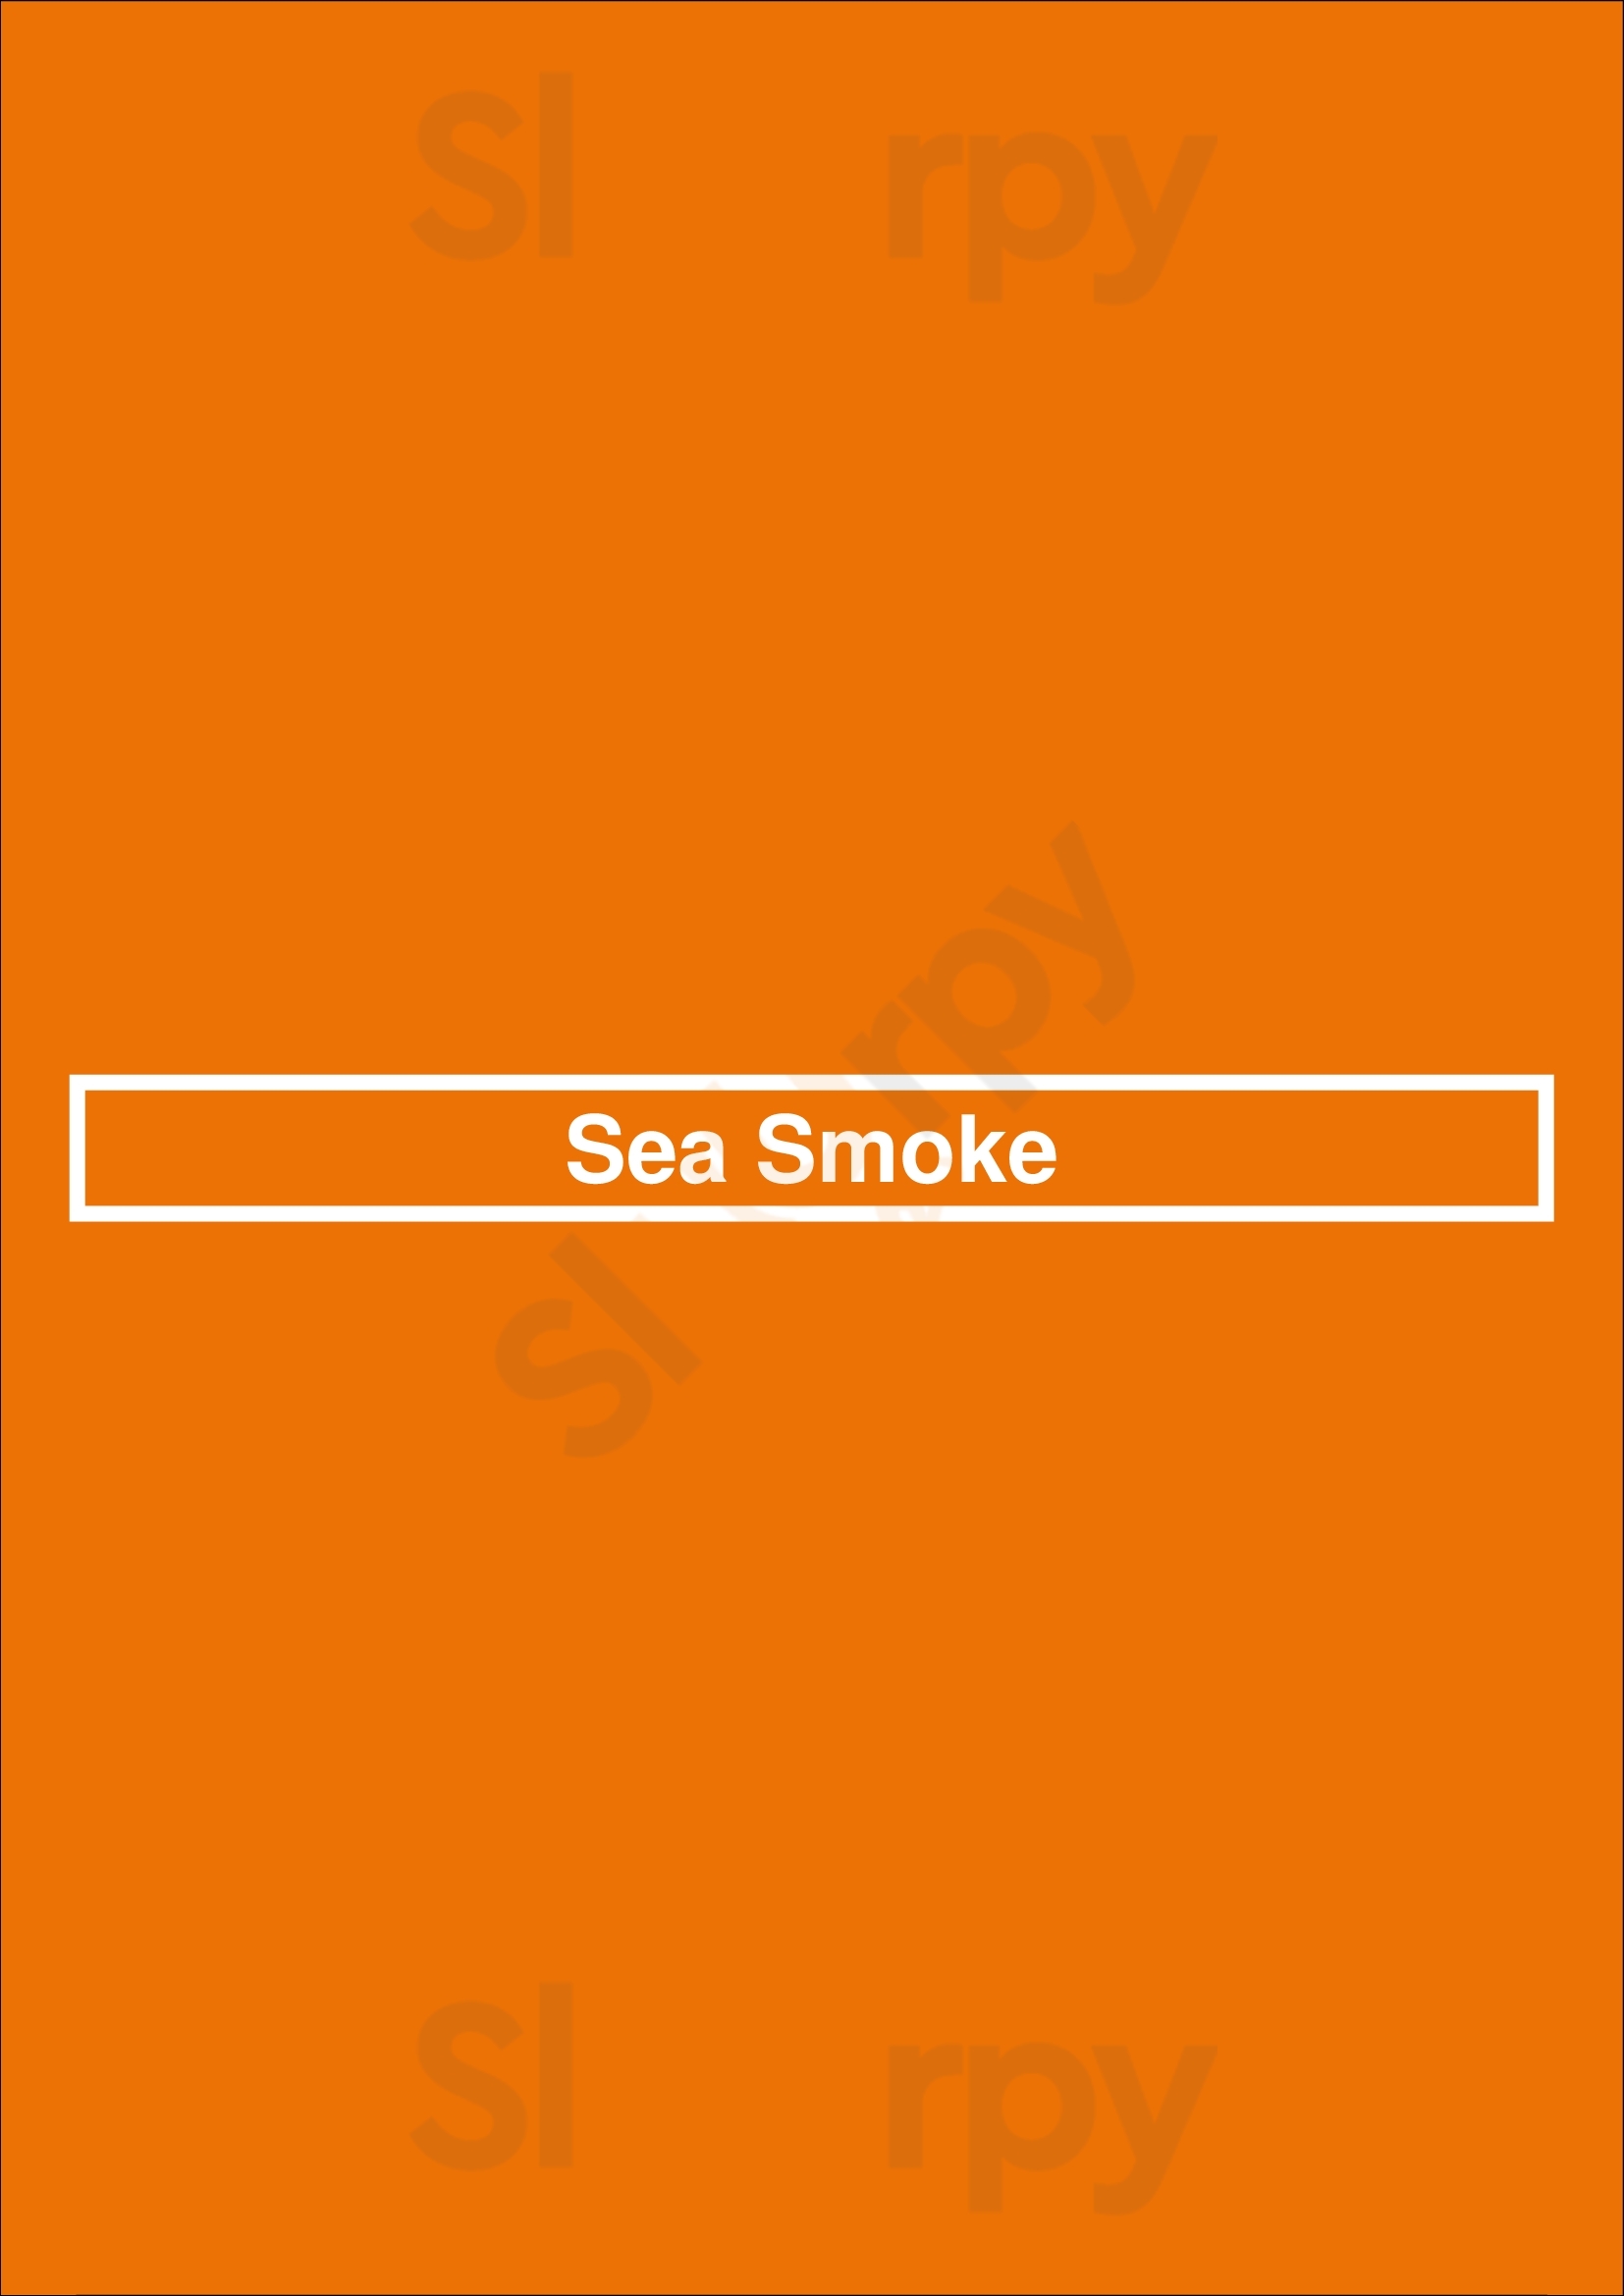 Sea Smoke Halifax Menu - 1